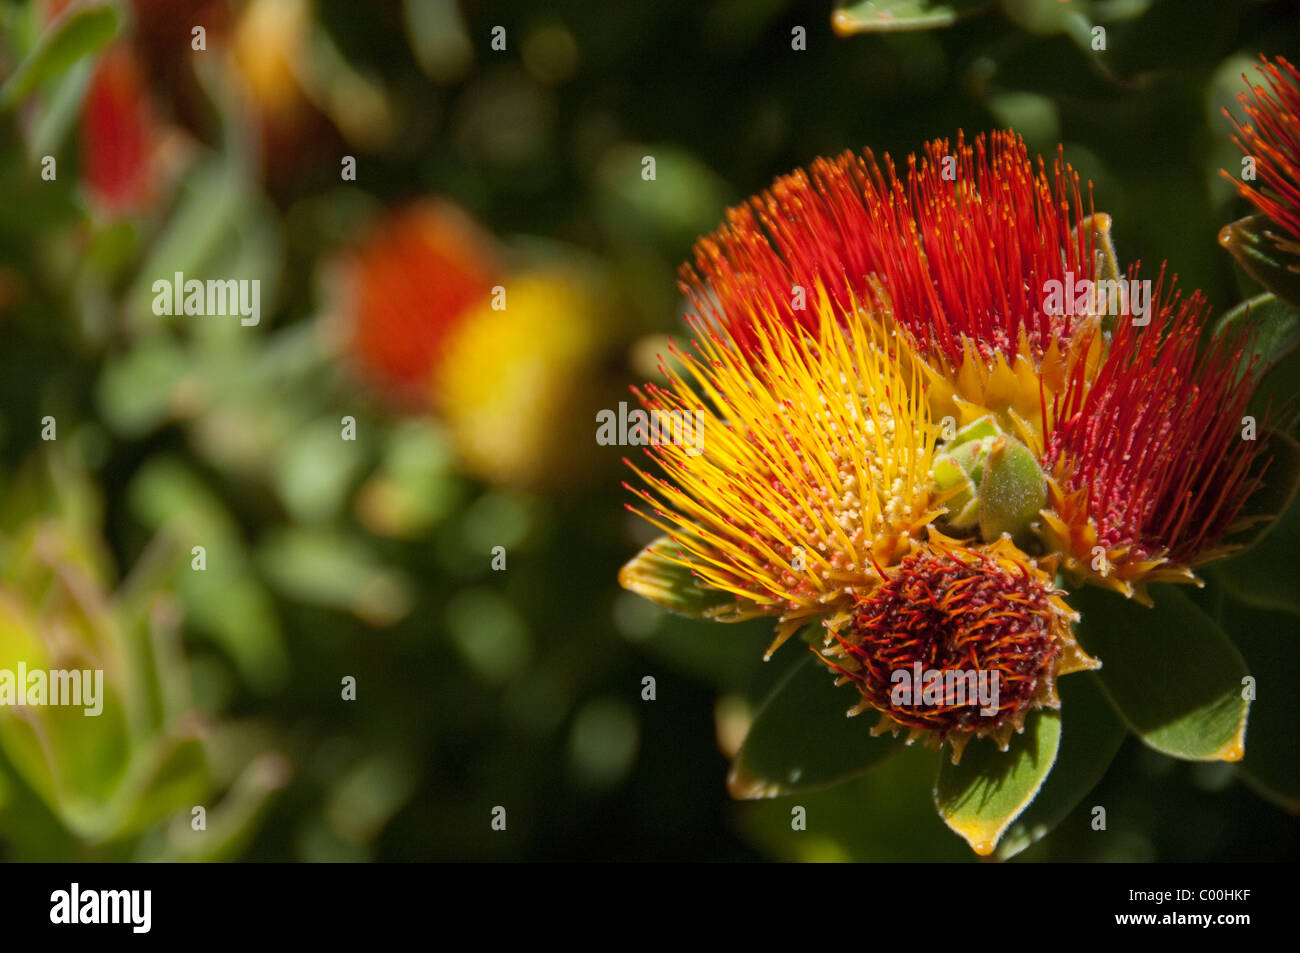 South Africa, Cape Town, Kirstenbosch National Botanical Garden. Protea Garden, Tufted Pincushion. Stock Photo